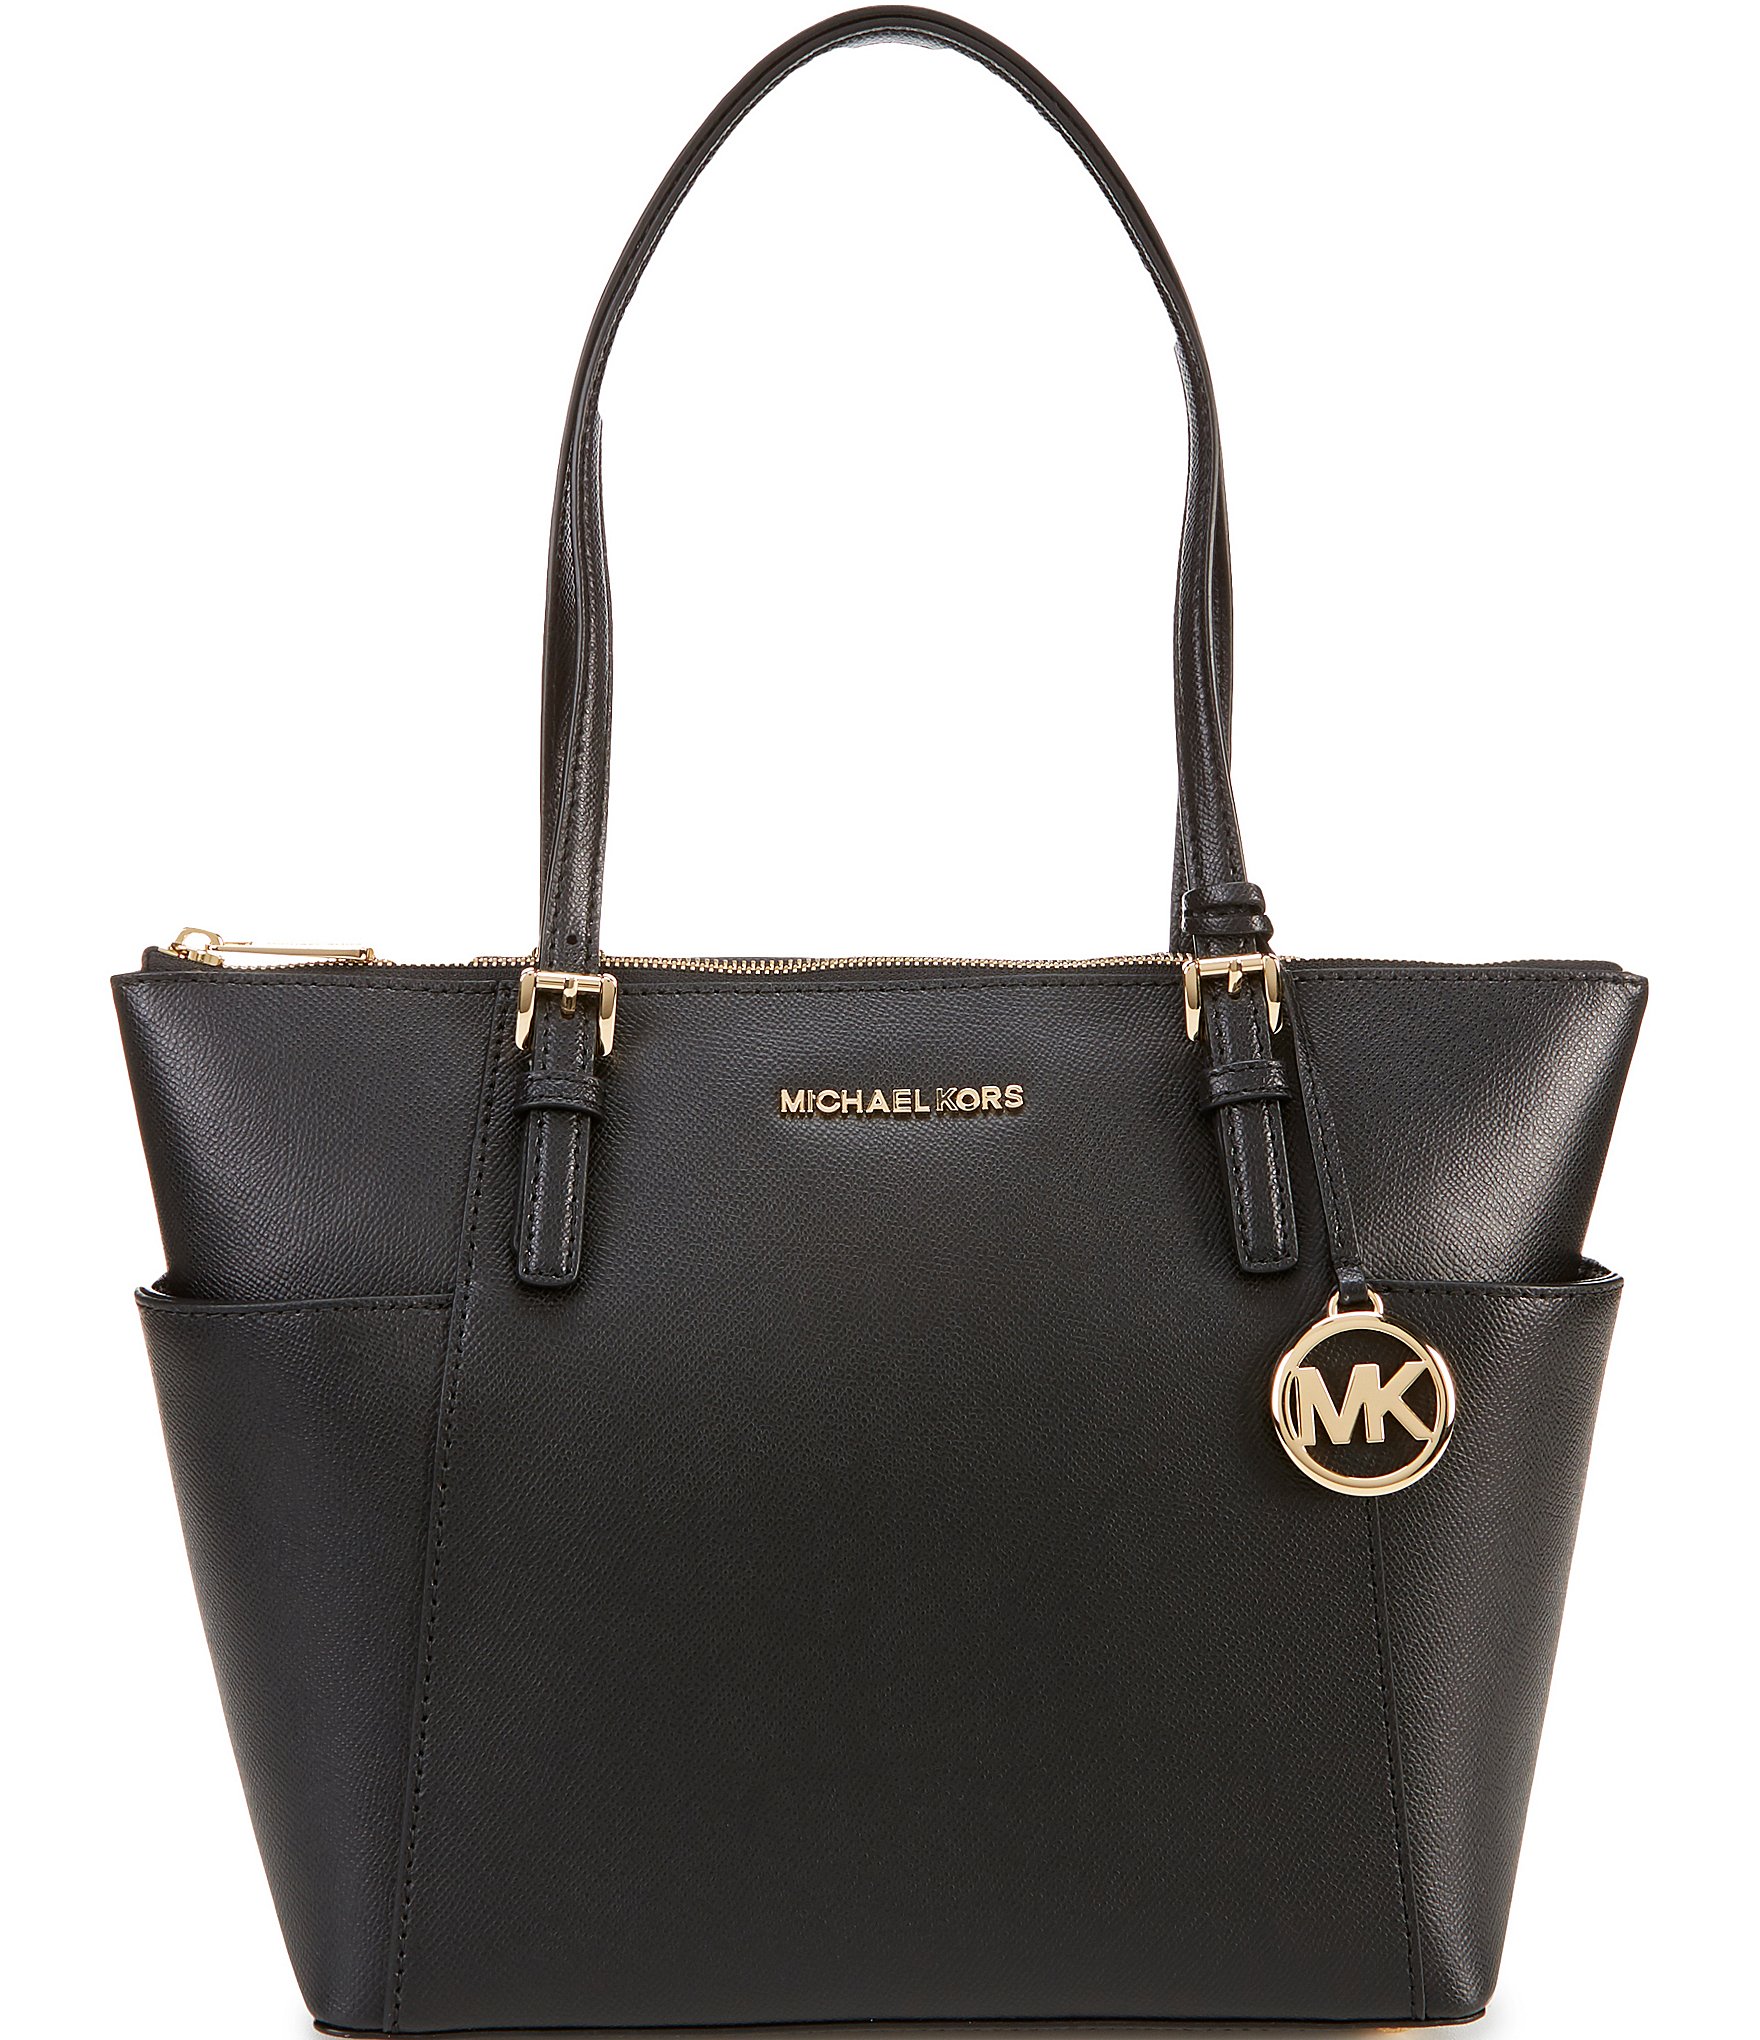 michael kors black and gold handbag